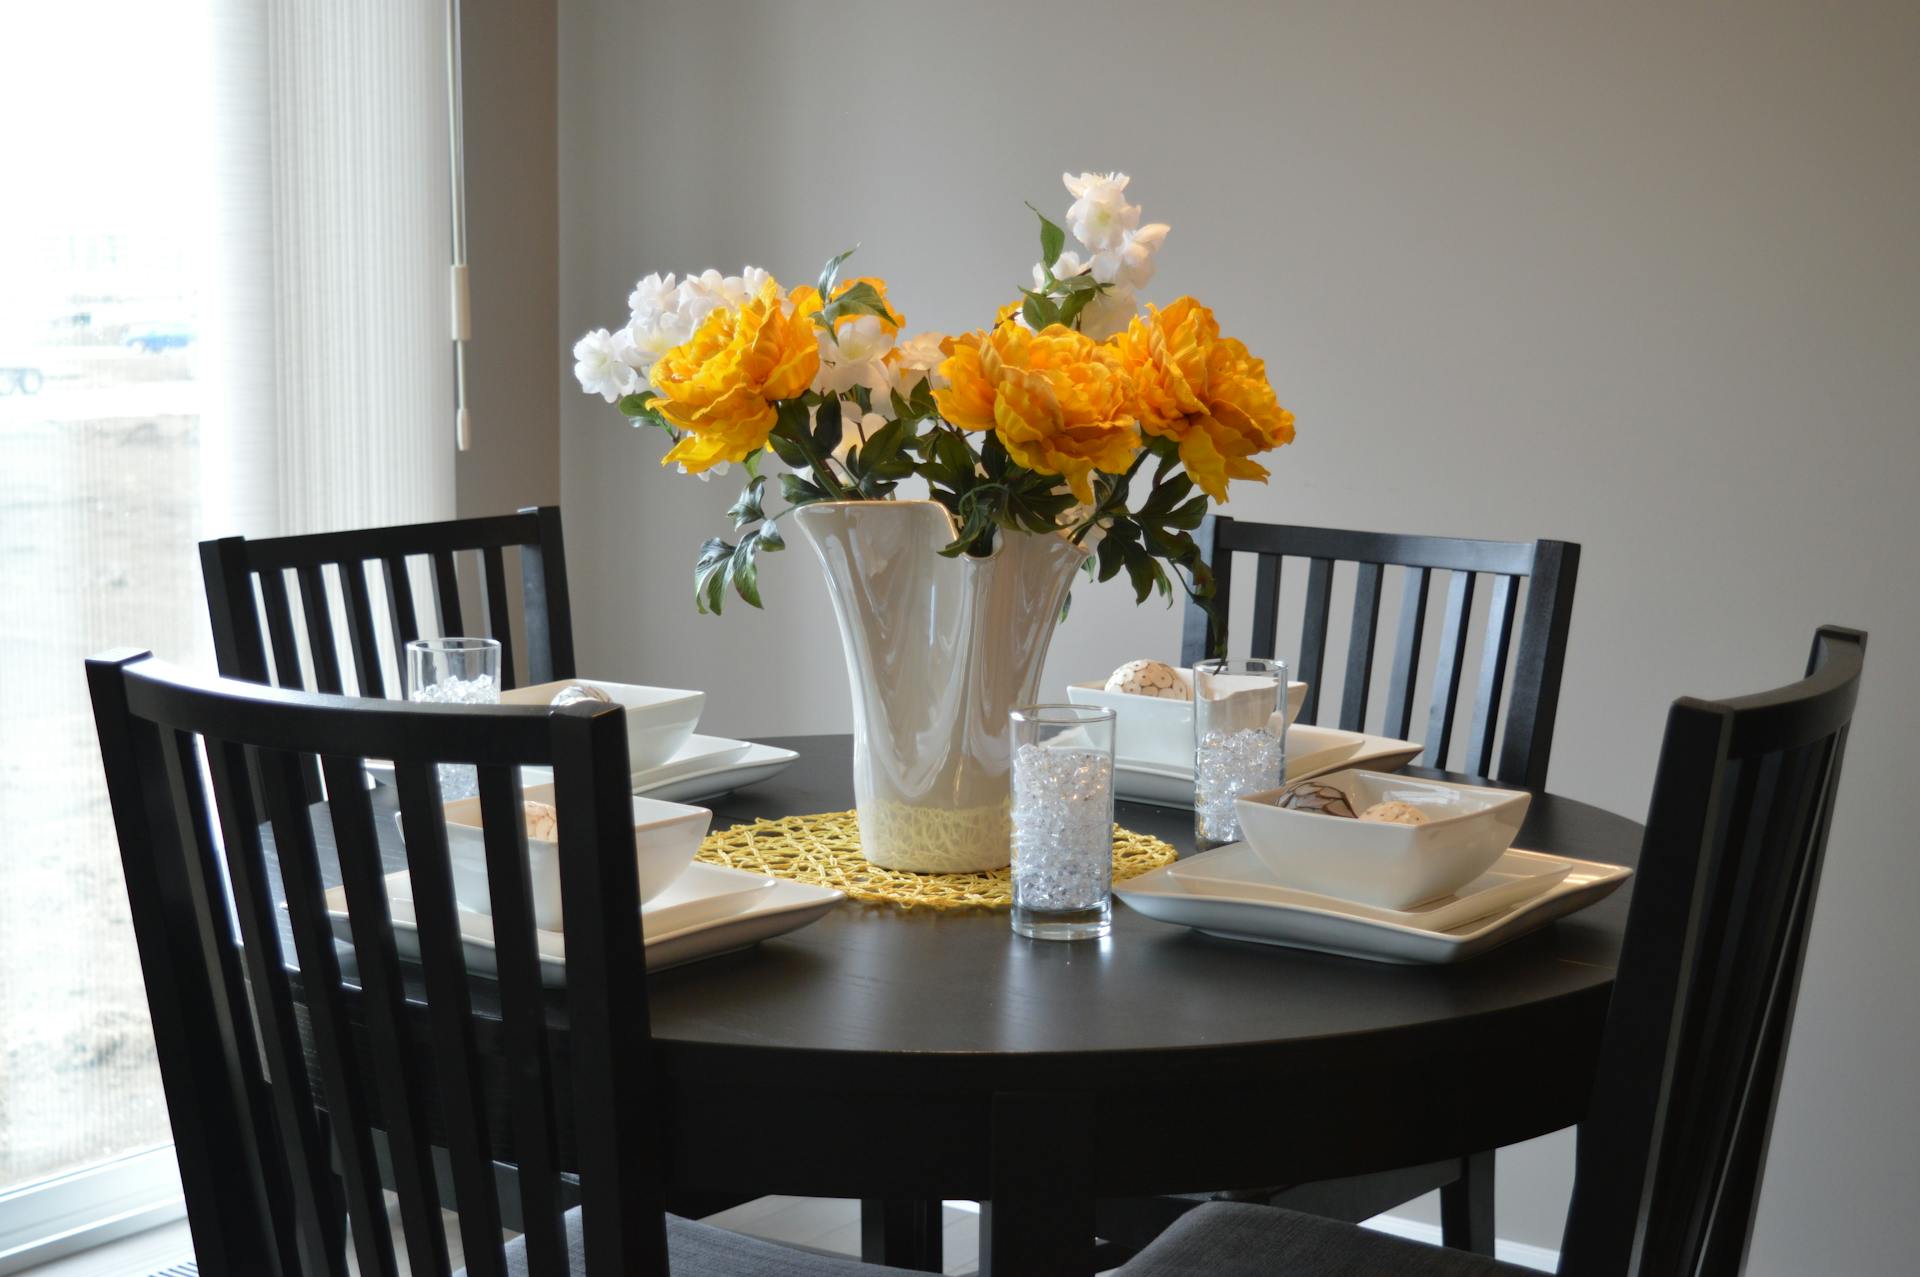 Un vase en céramique blanche sur une table à manger | Source : Pexels